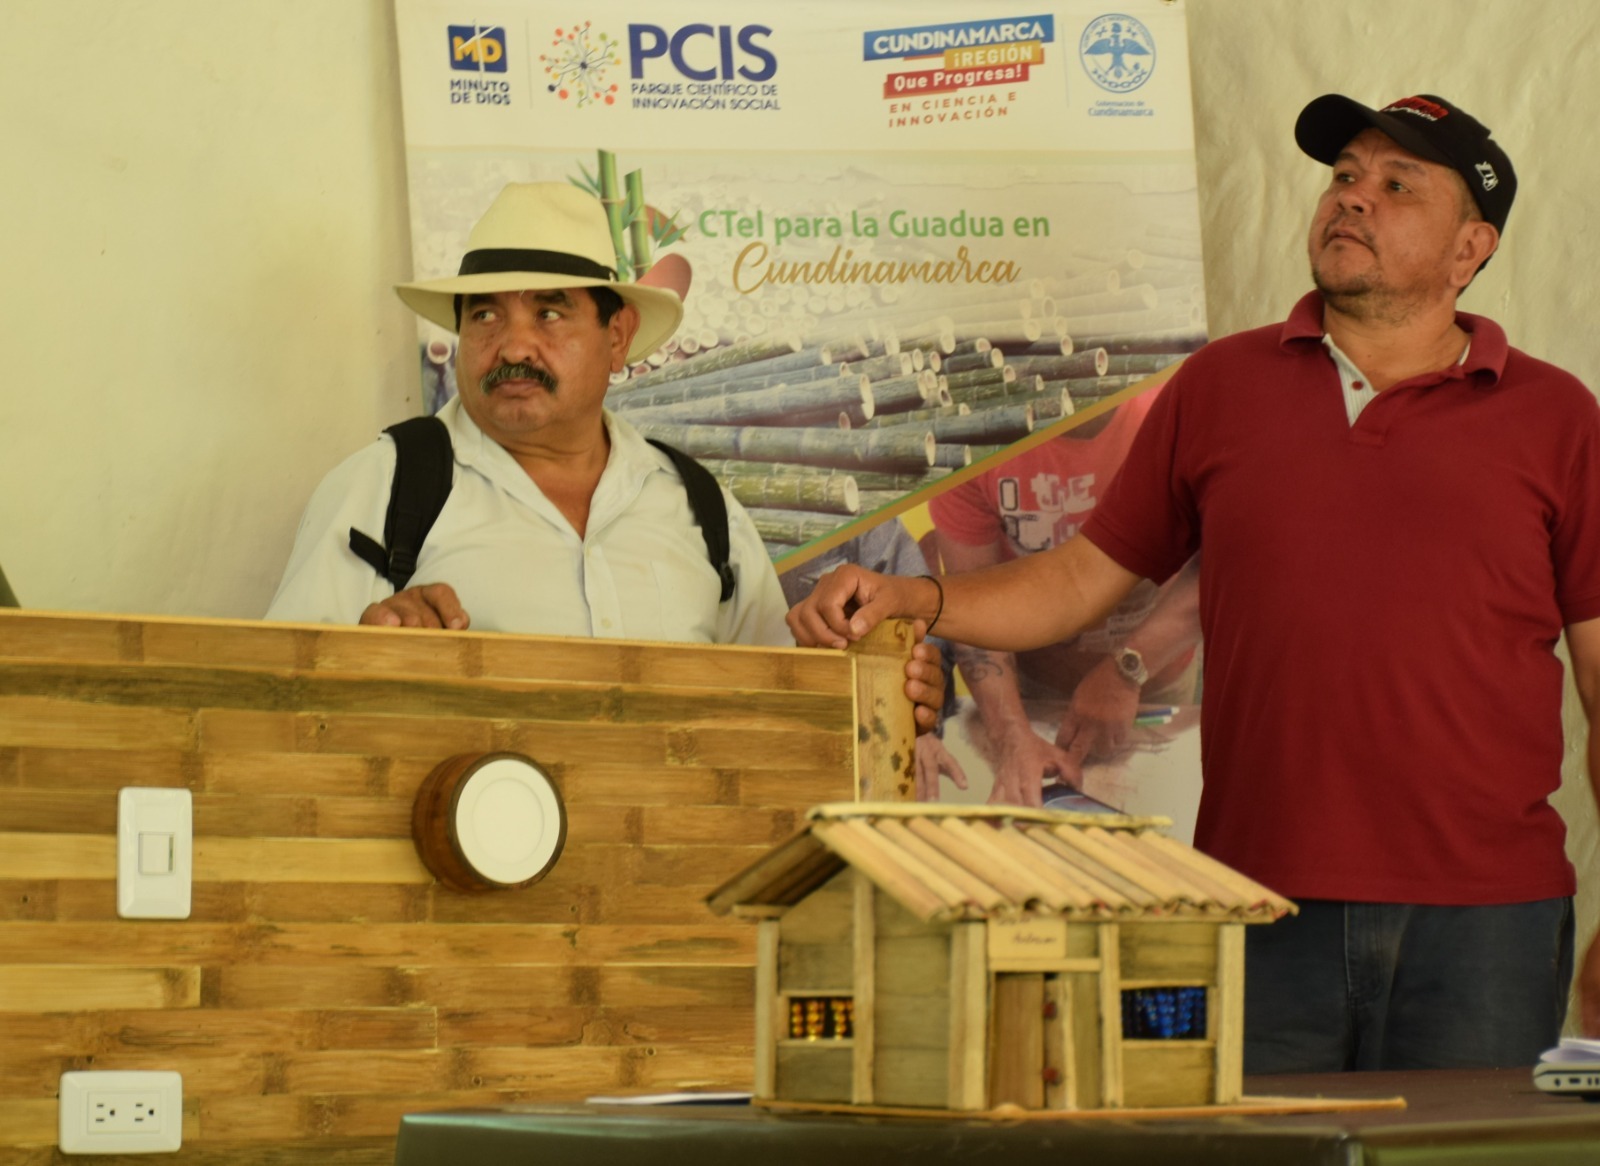 Cuatro nuevos Nodos guadueros en Cundinamarca